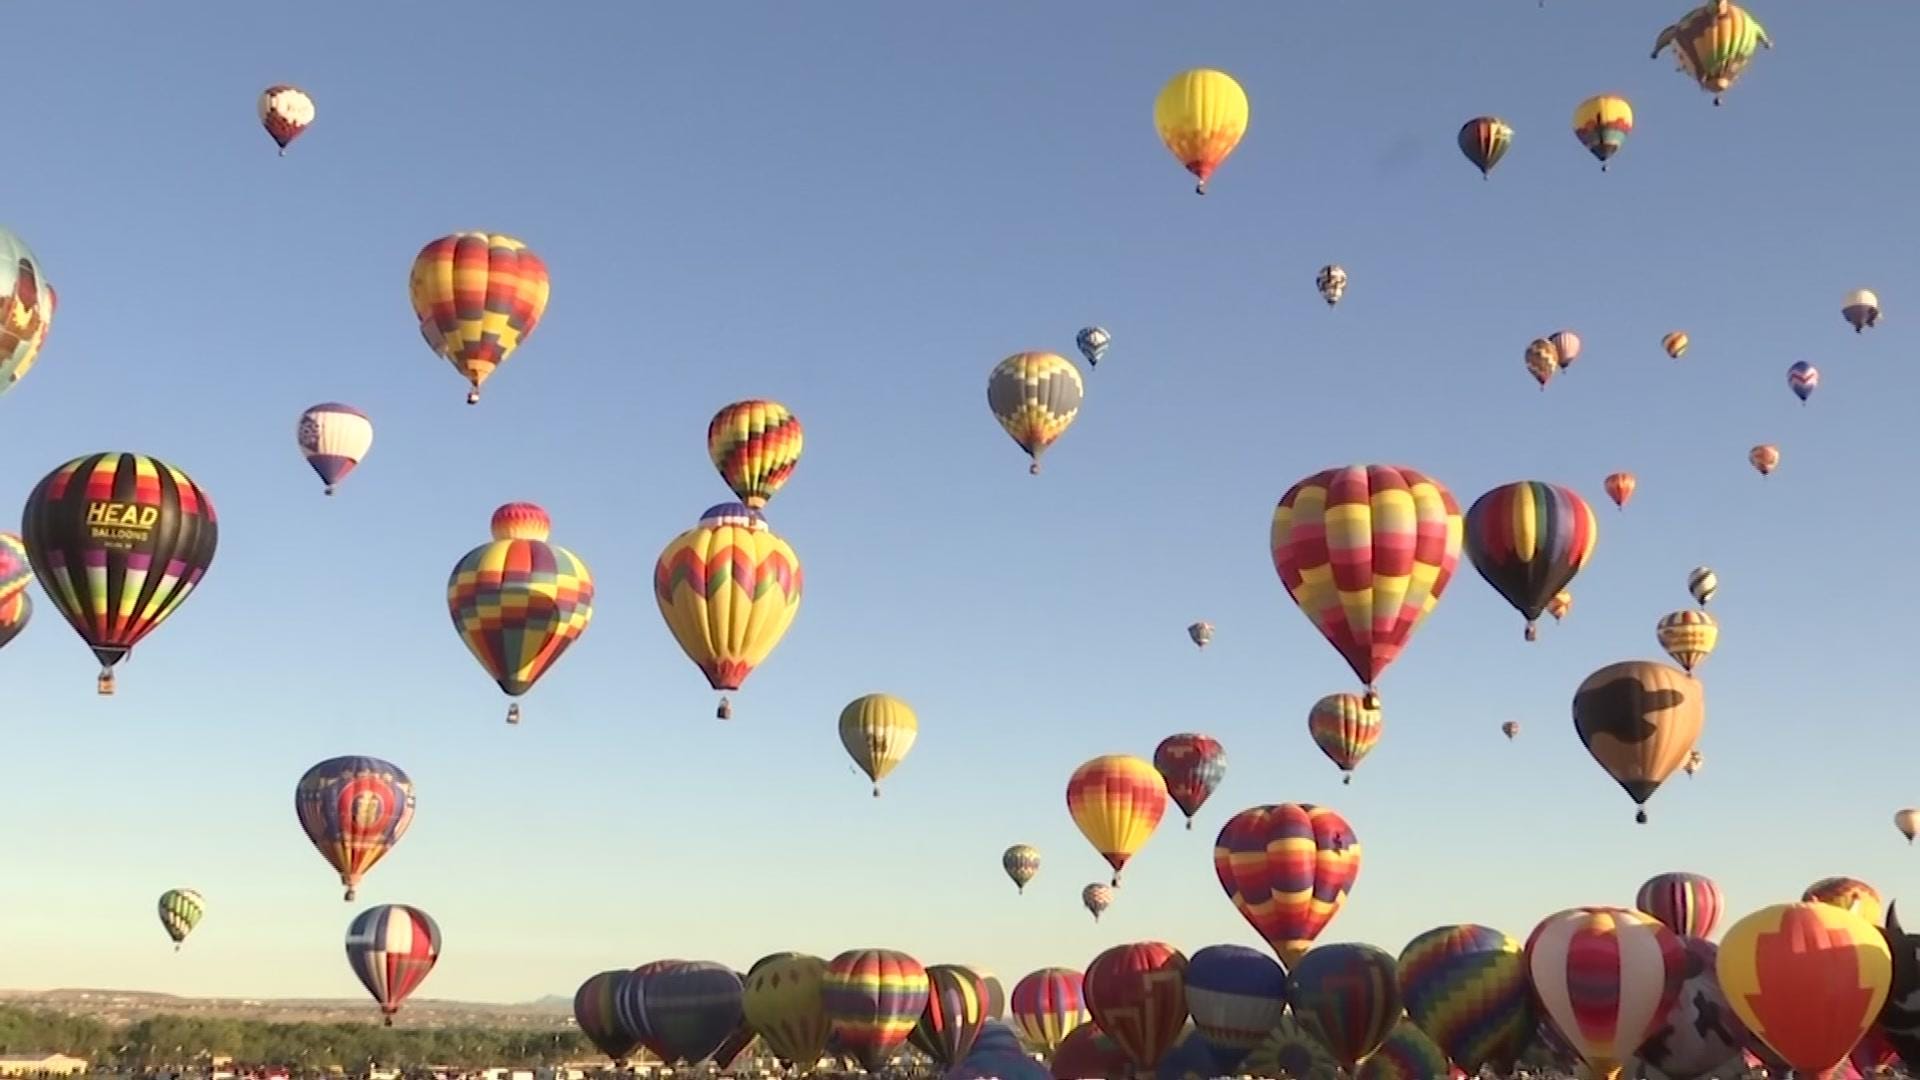 Hot air balloons finally rise at New Mexico fiesta